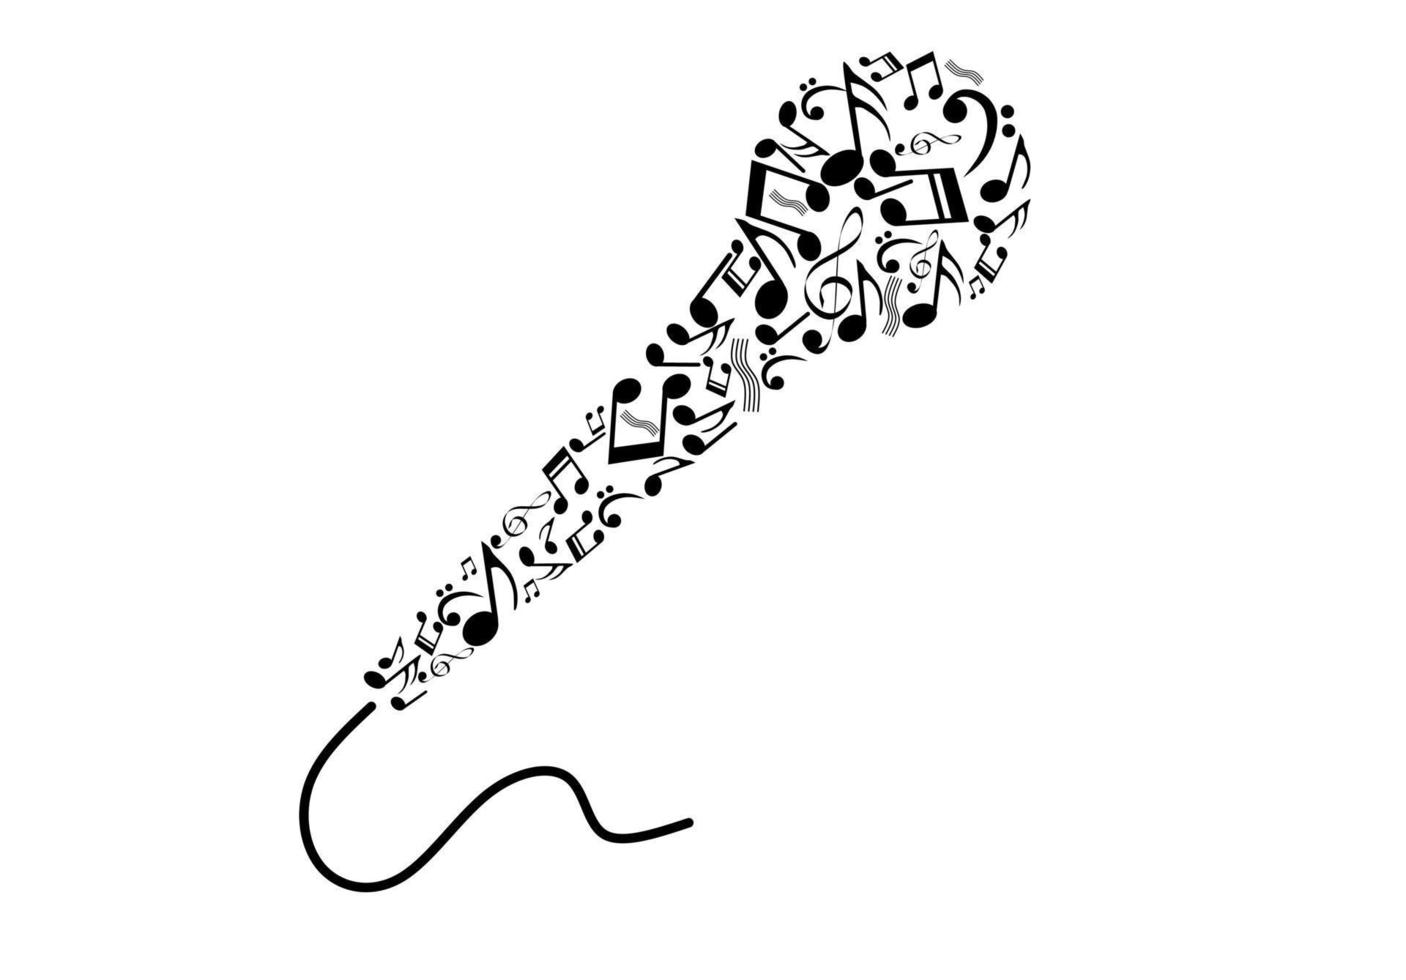 mikrofonform von musical notes.karaoke logo.singer logo vektor